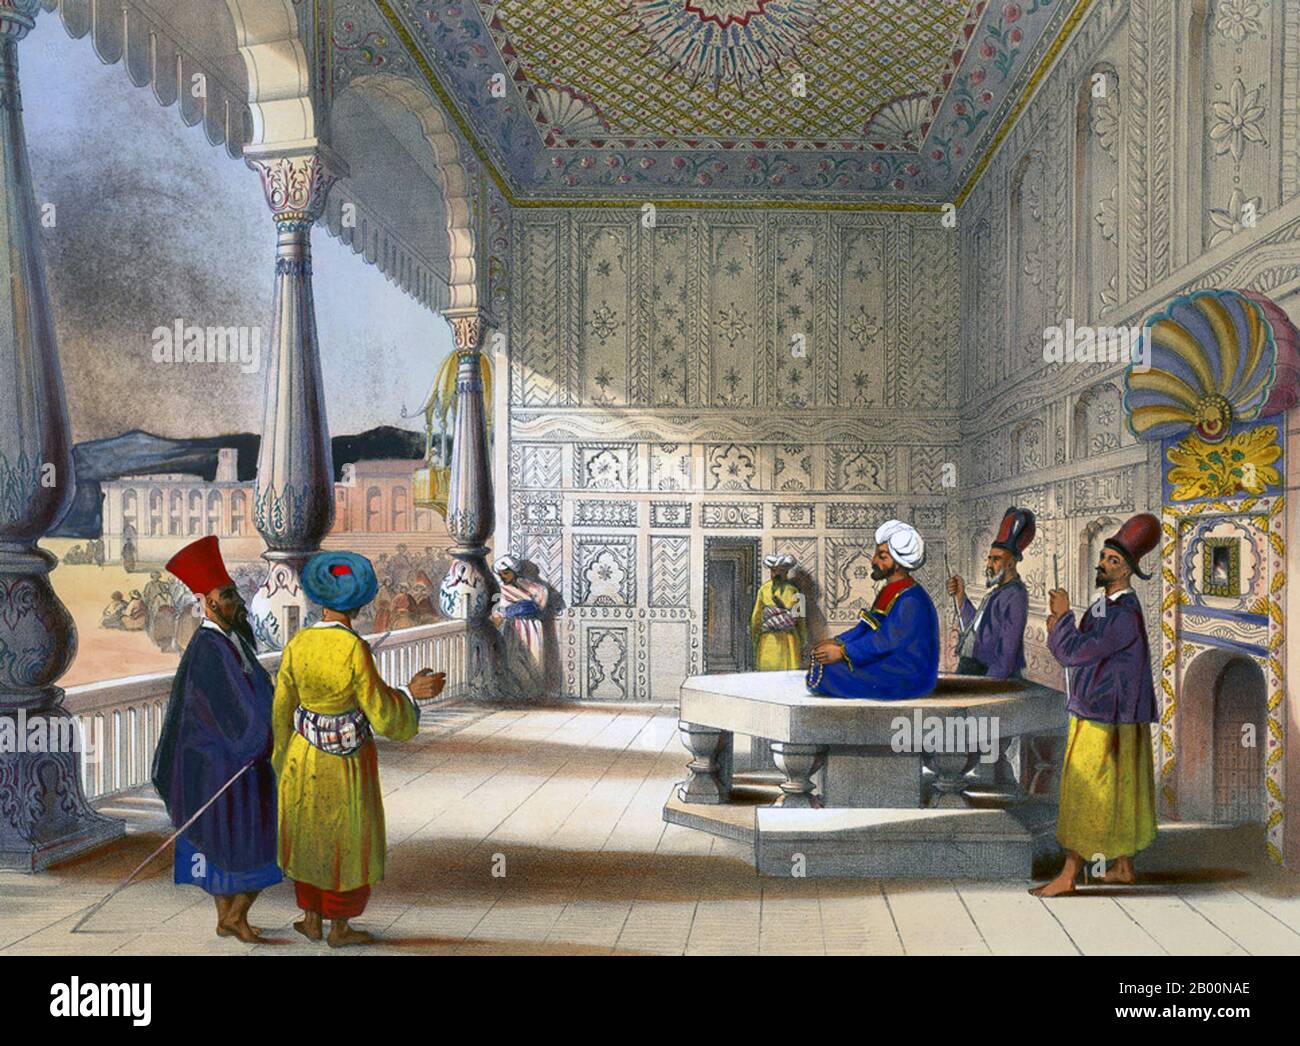 Afghanistan: 'Das Innere des Palastes von Shauh Shujah Ool Moolk, dem verstorbenen König von Caubul'. Lithographieplatte 3 aus 'Afghaunistan' von James Rattray (1818-1854), 1848. Shuja Shah Durrani (auch bekannt als Shah Shujah, Shoja Shah, Shujah al-Mulk) (c. 4. November 1785 – 5. April 1842) war Herrscher des Durrani-Reiches von 1803 bis 1809. Er regierte dann von 1839 bis zu seinem Tod im Jahr 1842. Shuja Shah gehörte der Sadozai-Linie der Abdali-Gruppe von Paschtunen an. Er wurde der fünfte Emir Afghanistans. Stockfoto